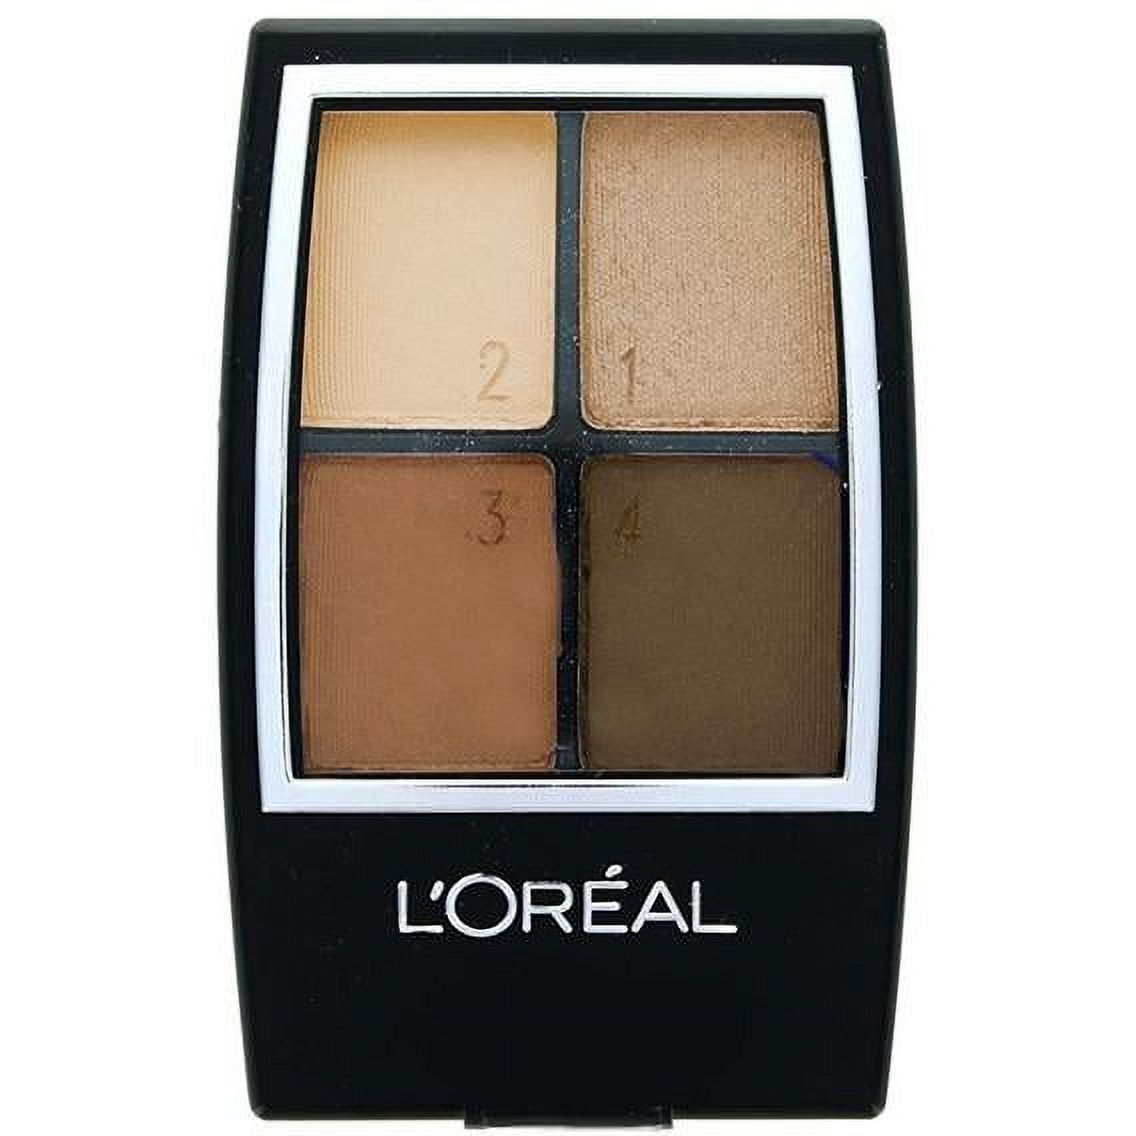 L'Oréal Paris Studio Secrets Professional Color Smokes Eyeshadow Quad, 936 Blackened Smokes, 0.16 Fl. Oz. - image 2 of 16